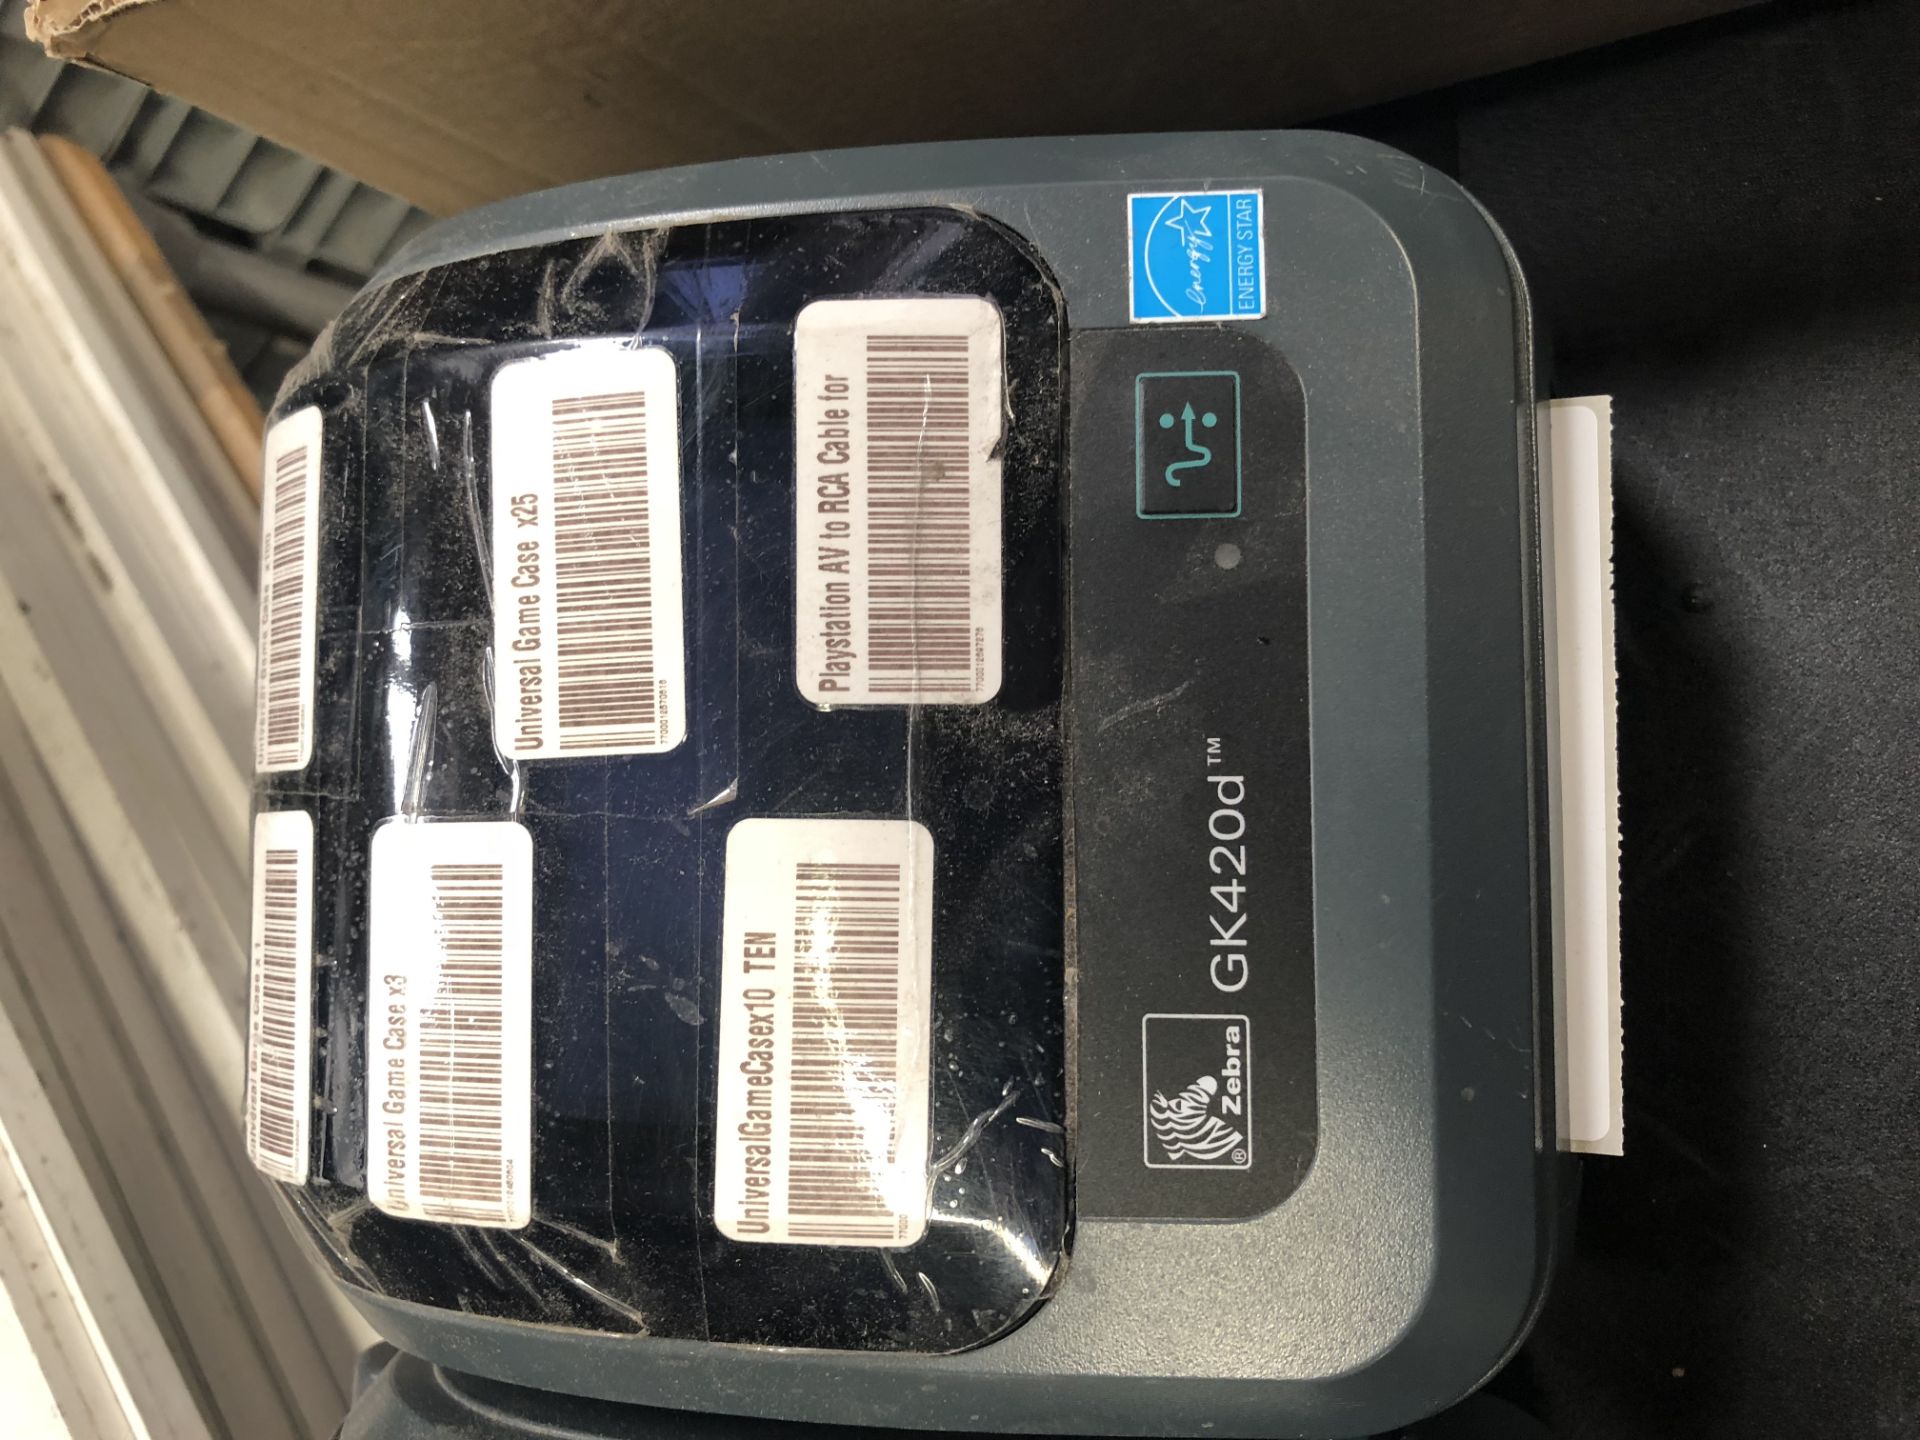 3 x Zebra GK420d thermal label printers